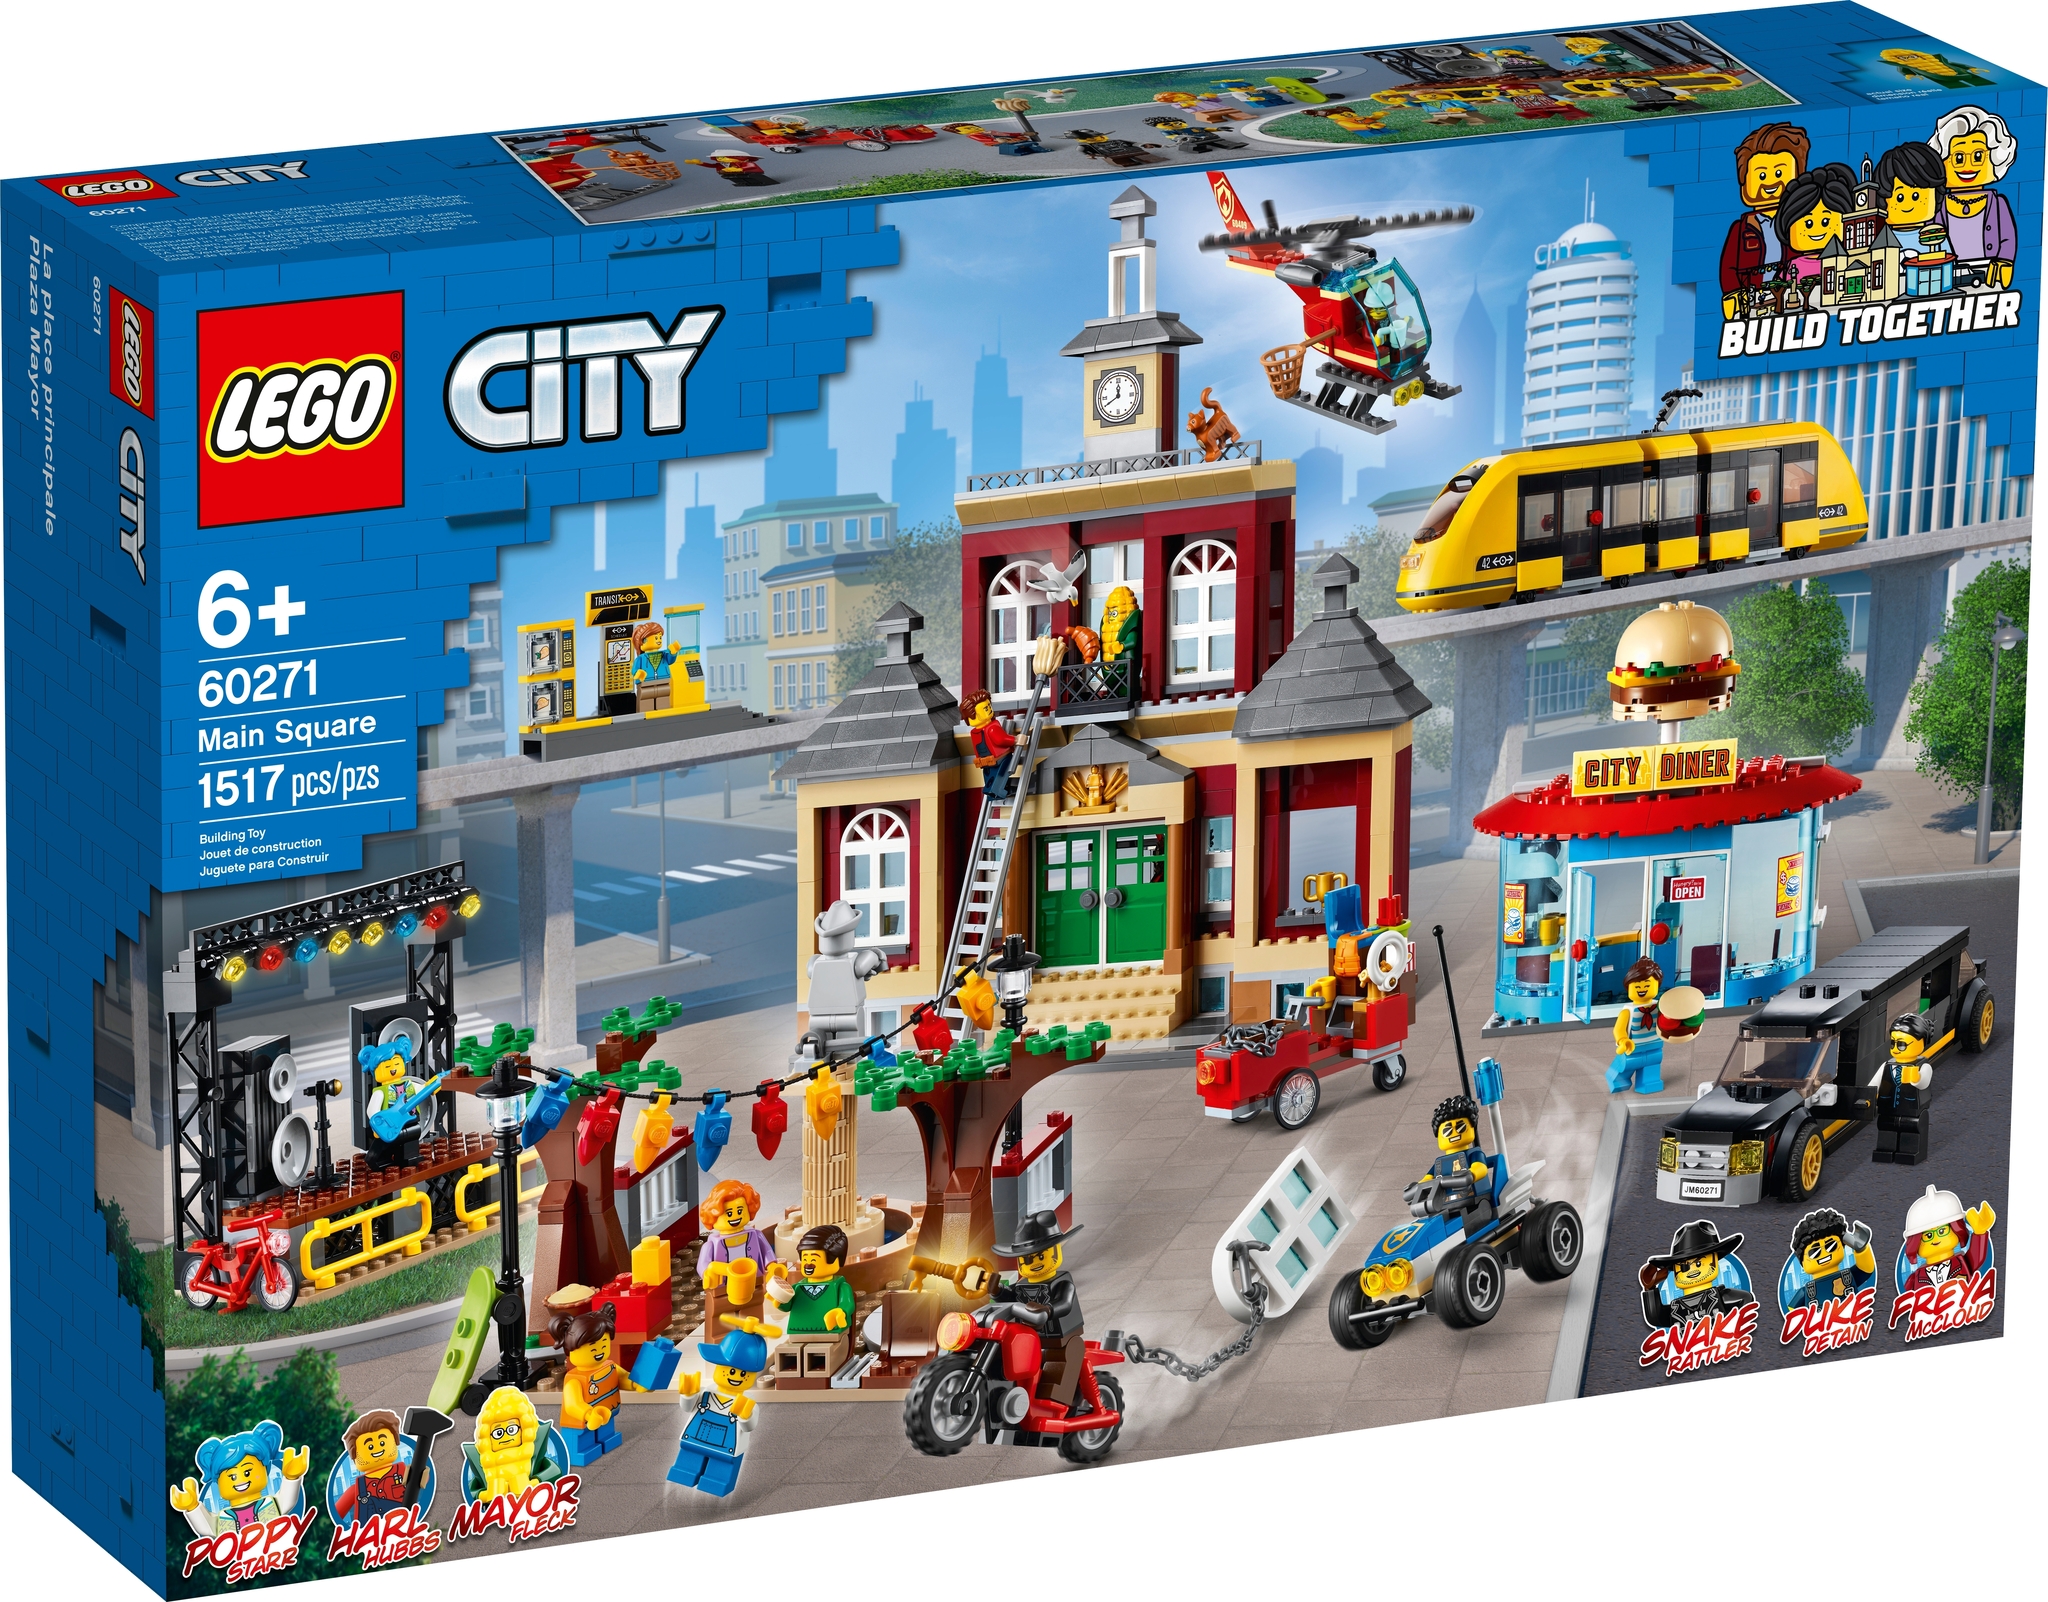 Lego City 60327 - Le transport du cheval - Maitre des Jeux